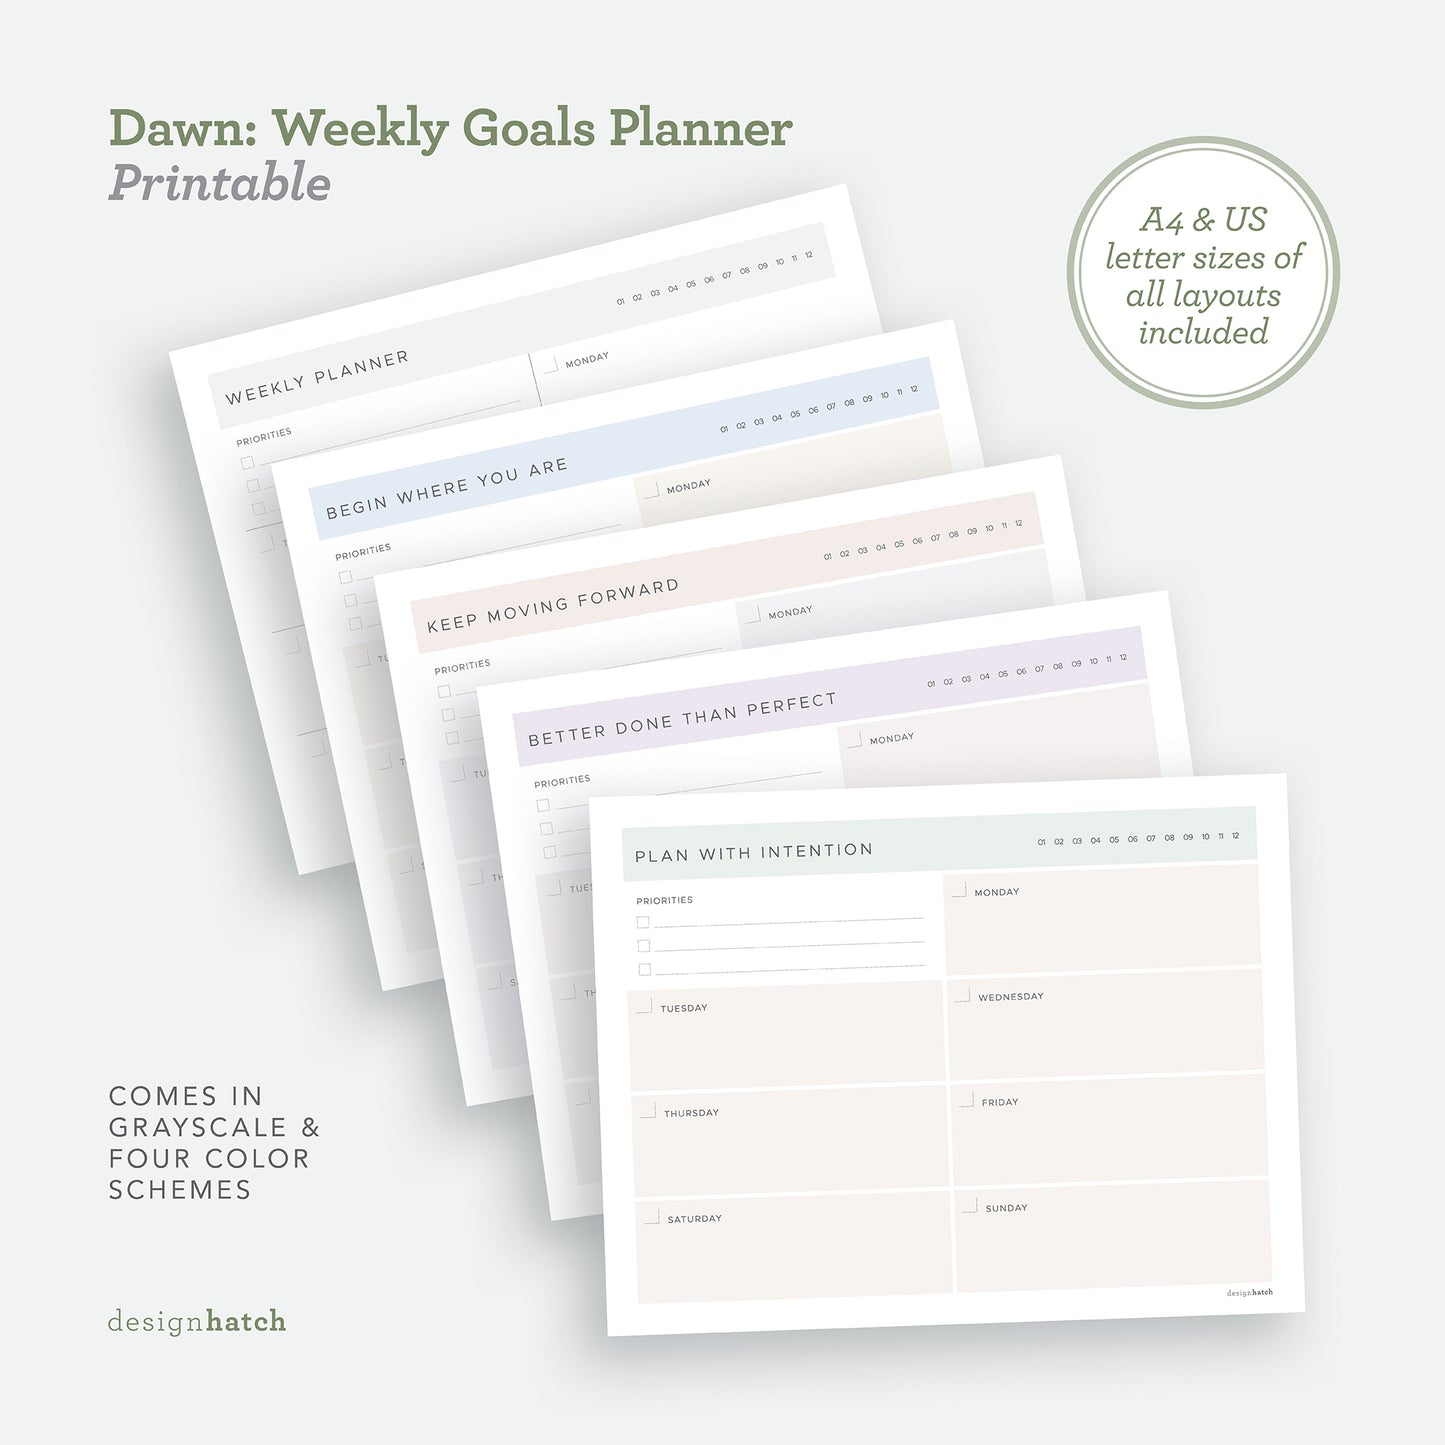 Dawn: Weekly Goals Planner